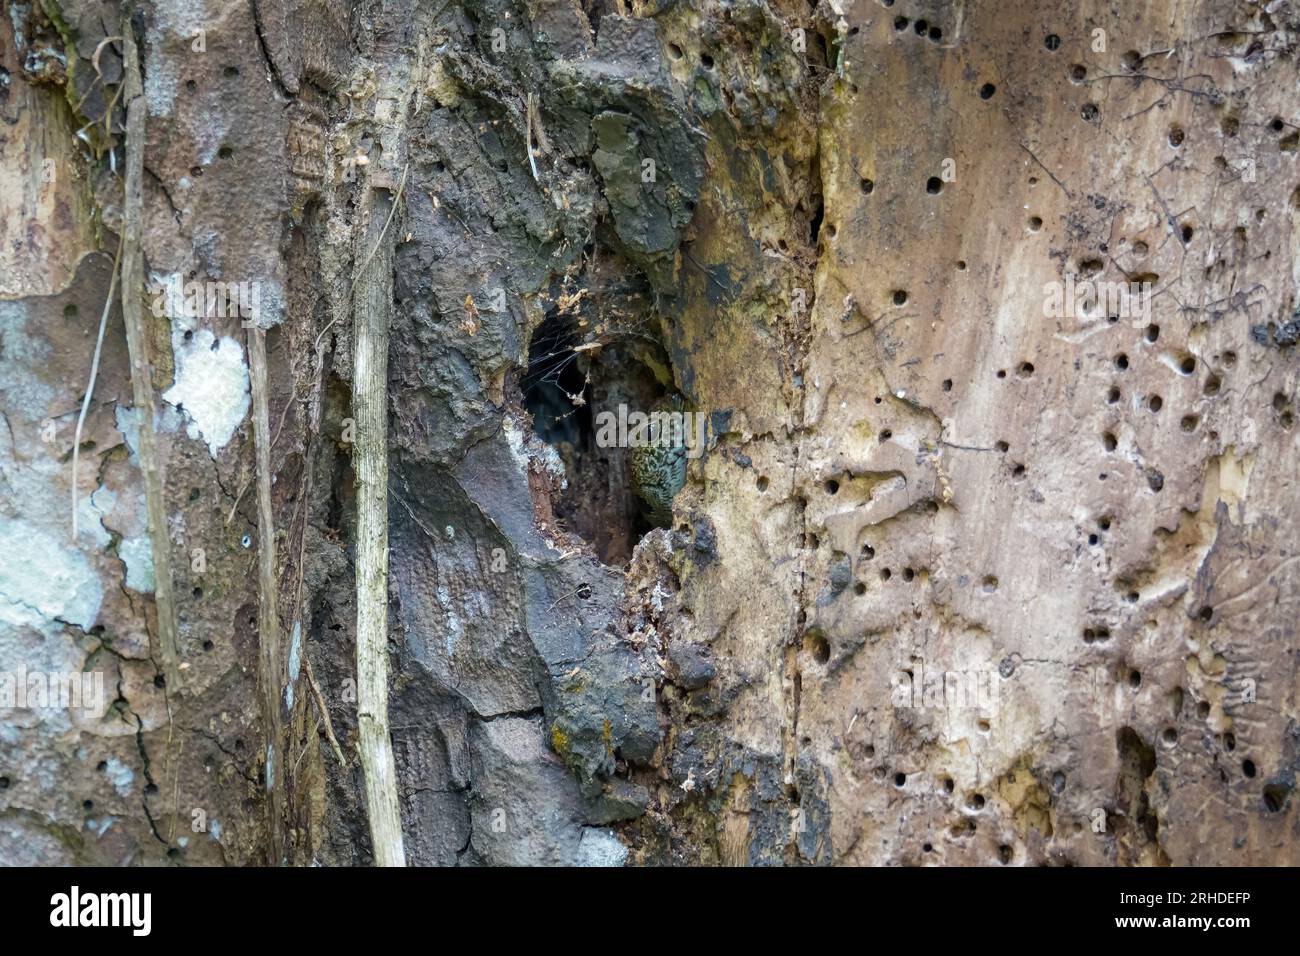 Skink (Sphenomorphus praesignis) in un buco d'albero. Lucertola maculata che si nasconde nel legno nella foresta di Fraser's Hill, Malesia. Una specie di lucertola dentro Foto Stock